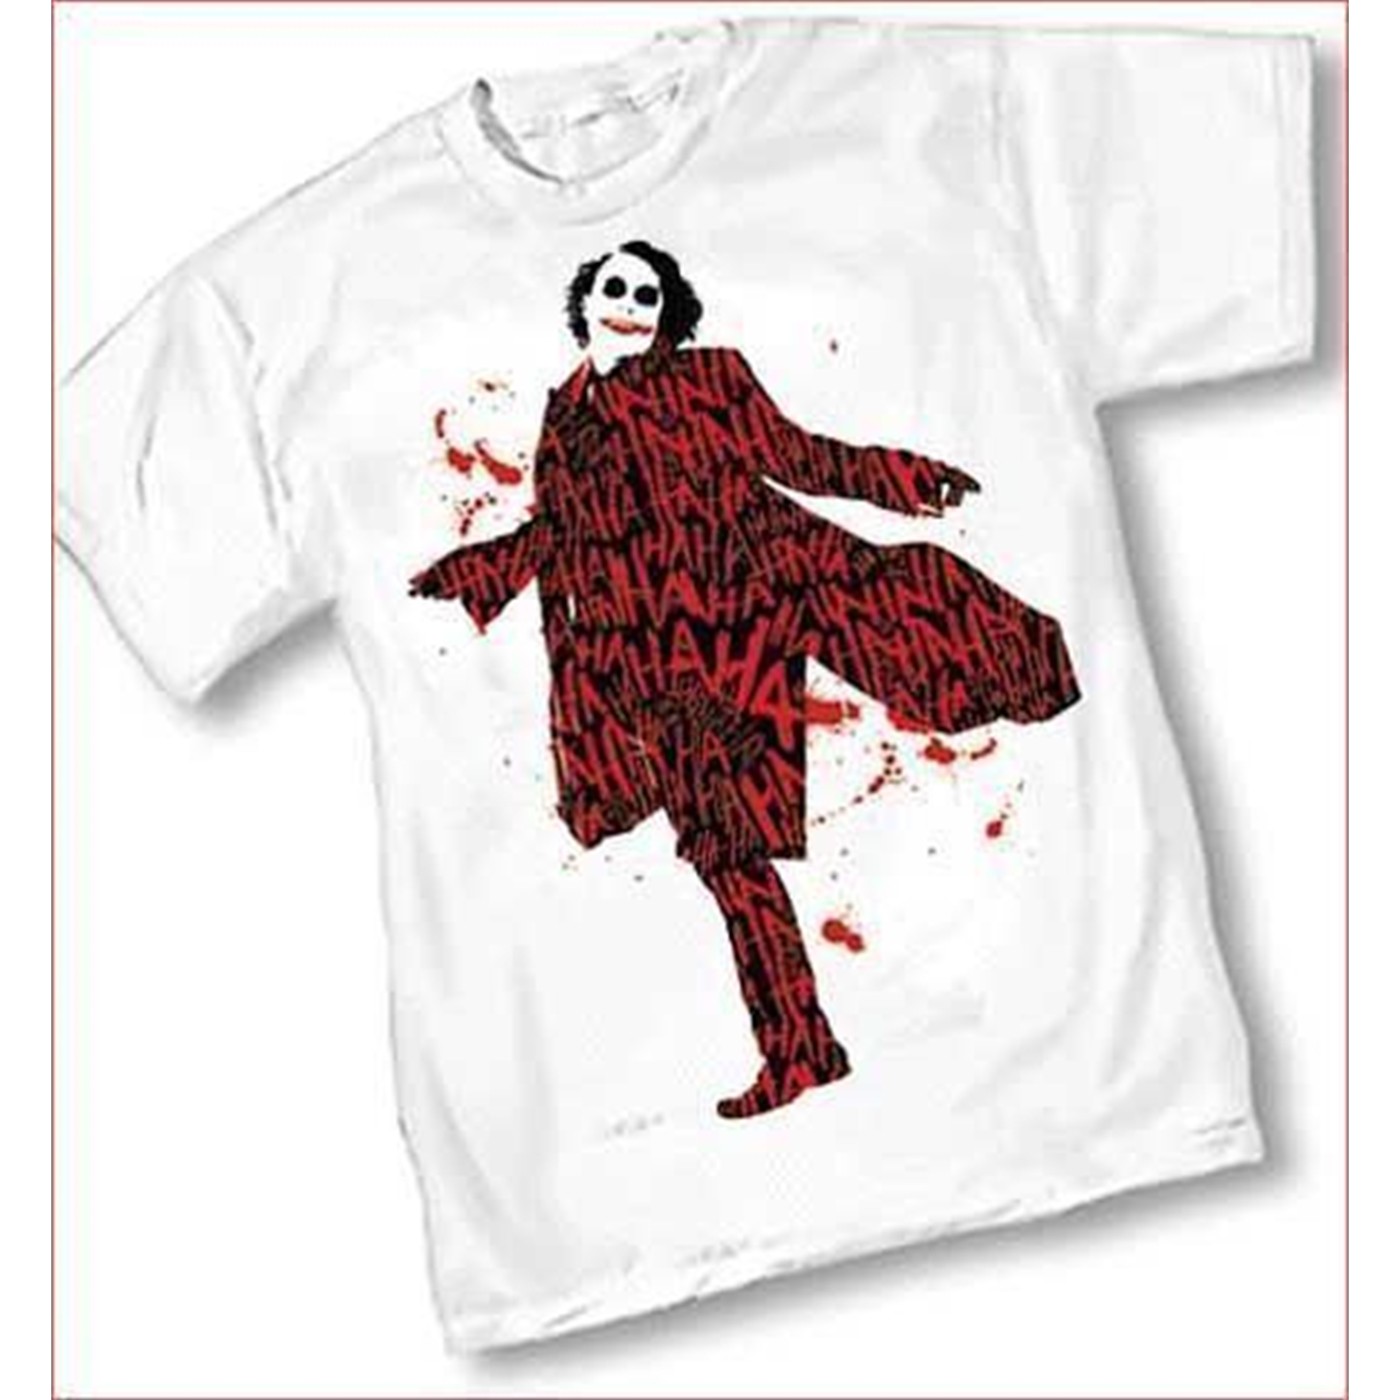 Joker Heath Ledger Ha Ha Laughter T-Shirt